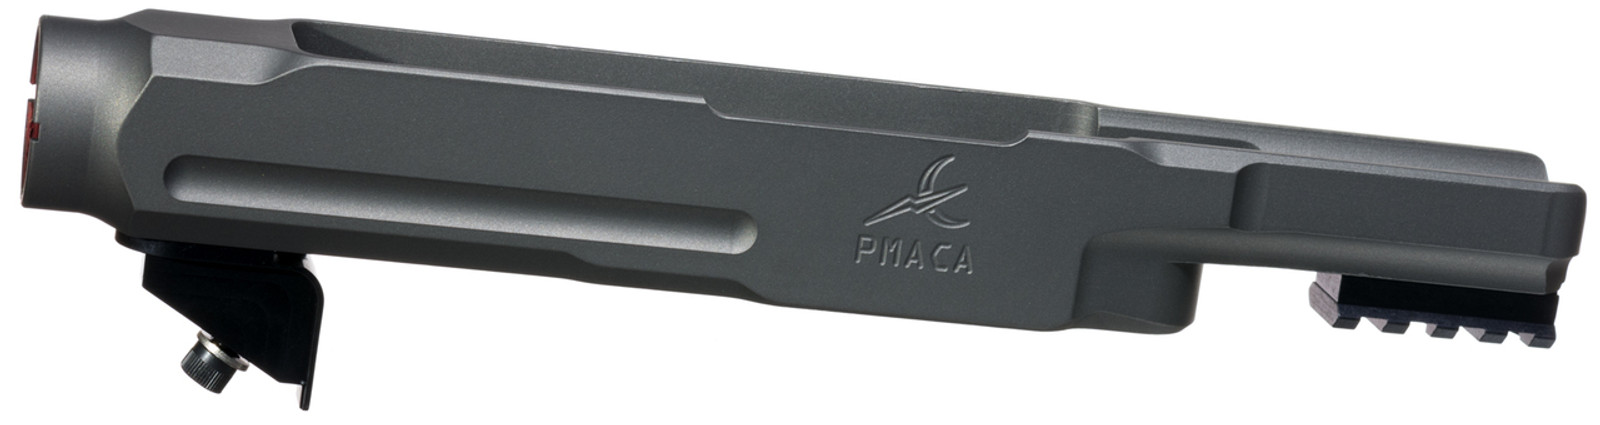 PMACA Standard Chassis - Tungsten Grey Cerakote